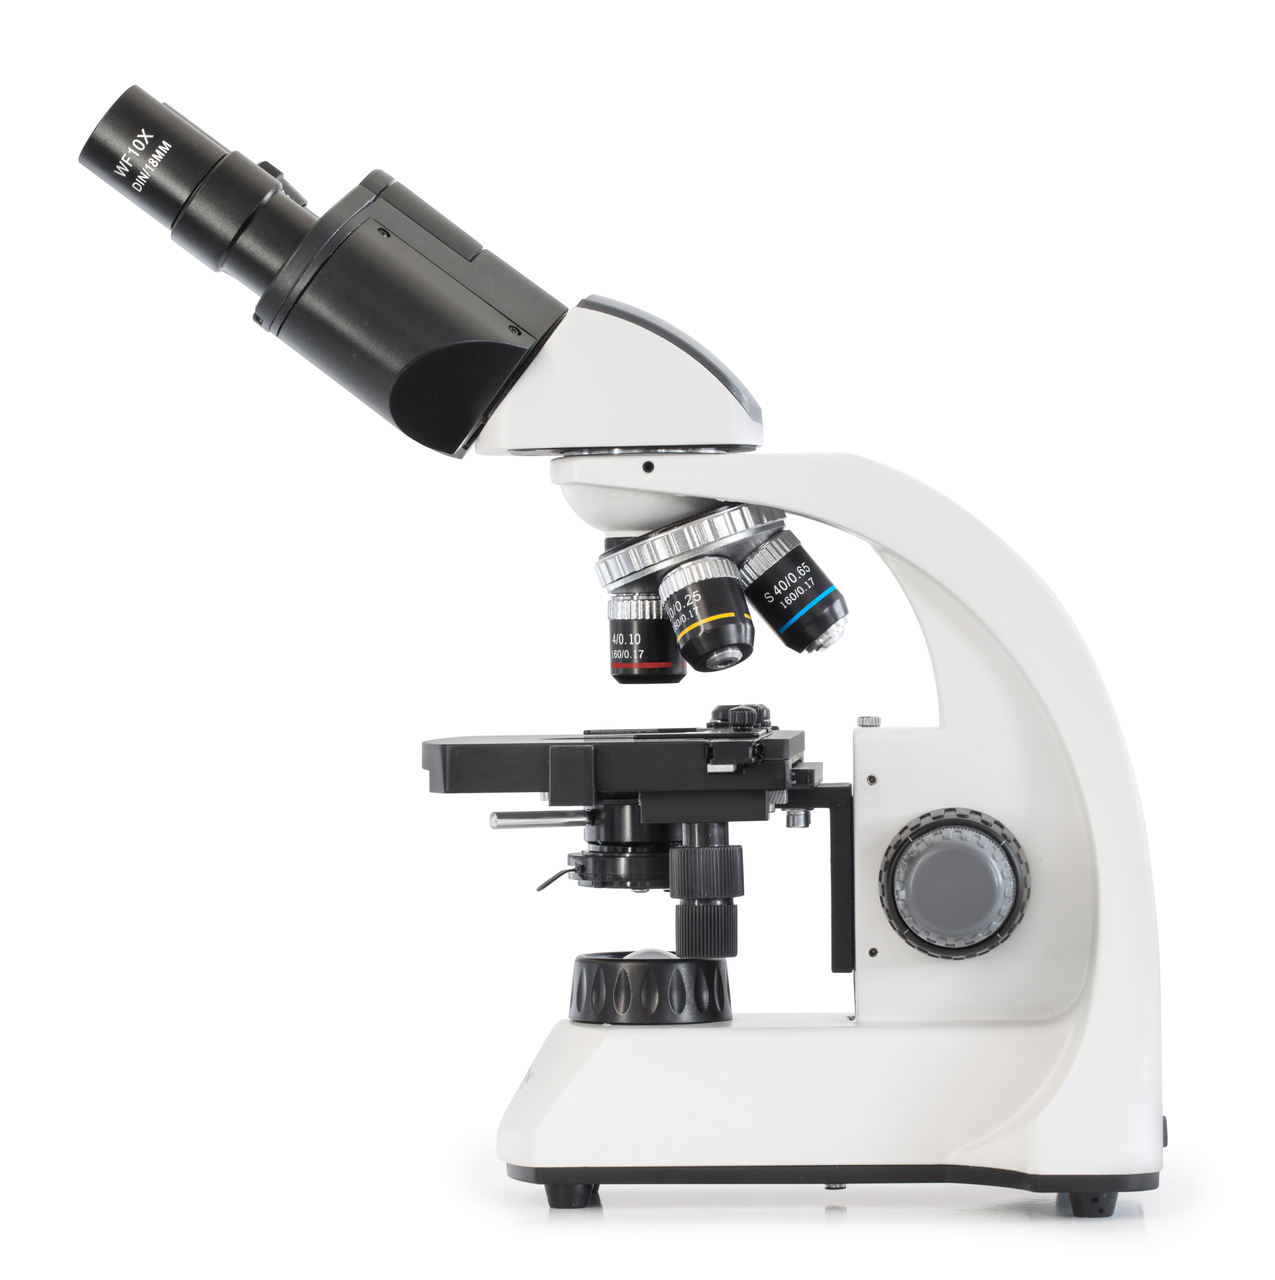 透射光顯微鏡，雙目鏡筒型，4x、10x、40x、100x 放大倍率